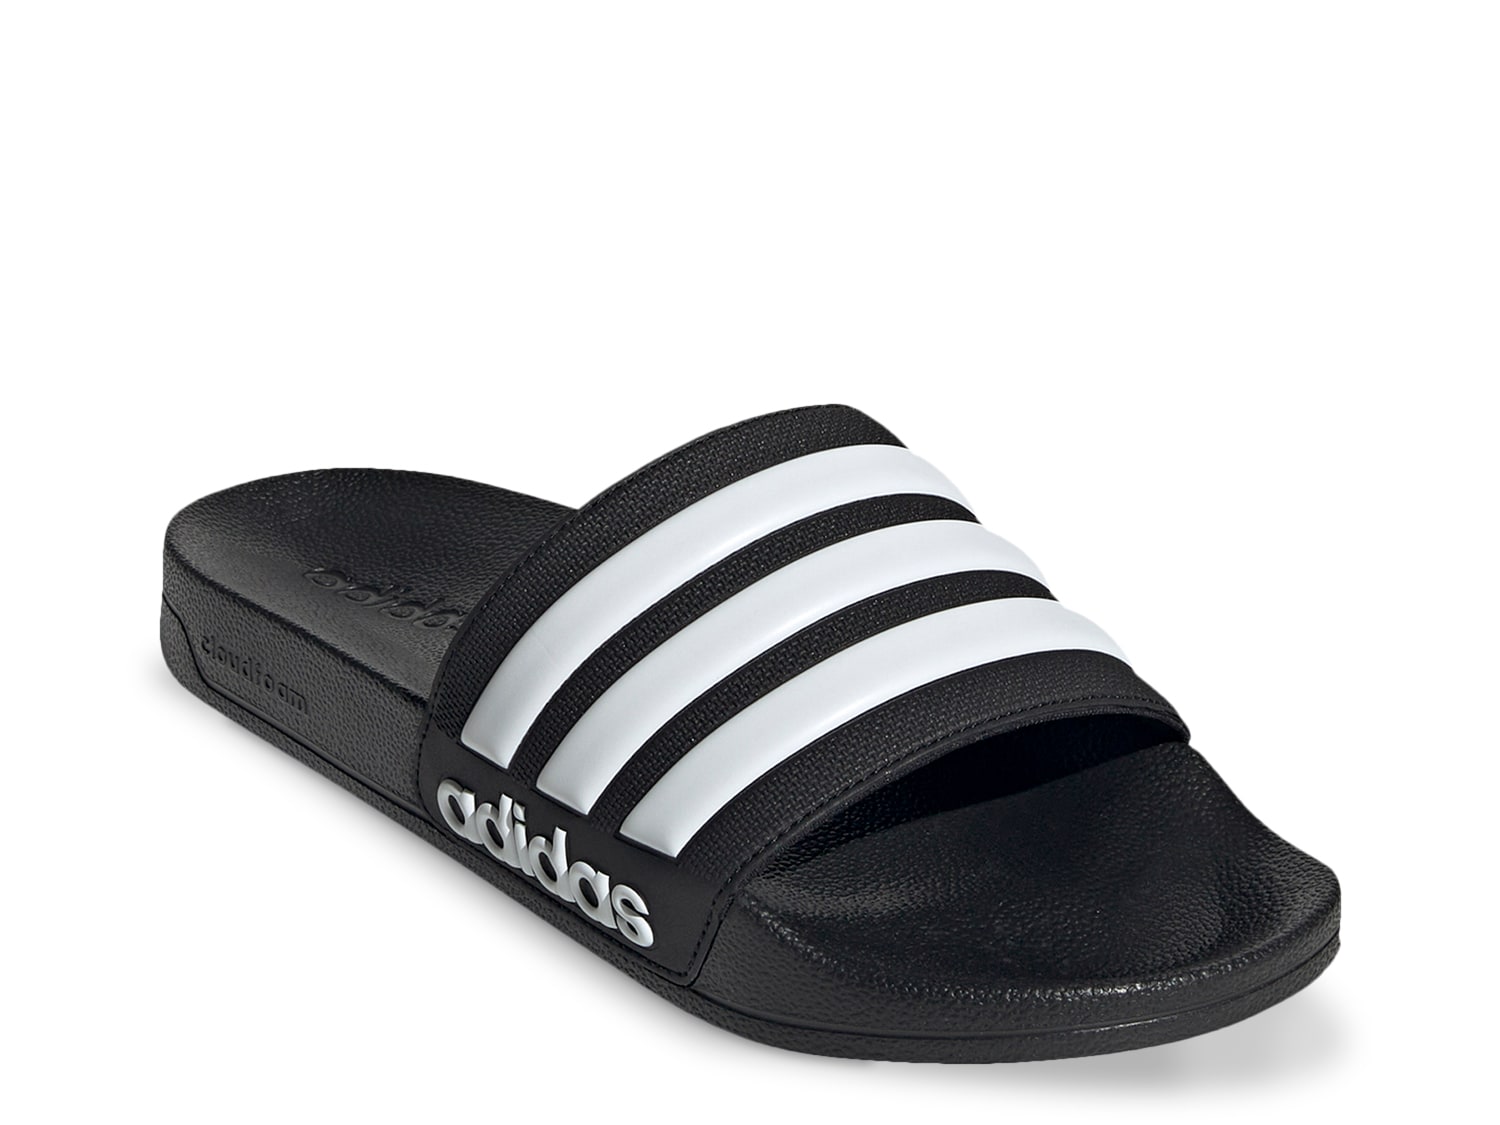 stropdas Anders Prime adidas Adilette Shower Slide Sandal - Men's - Free Shipping | DSW